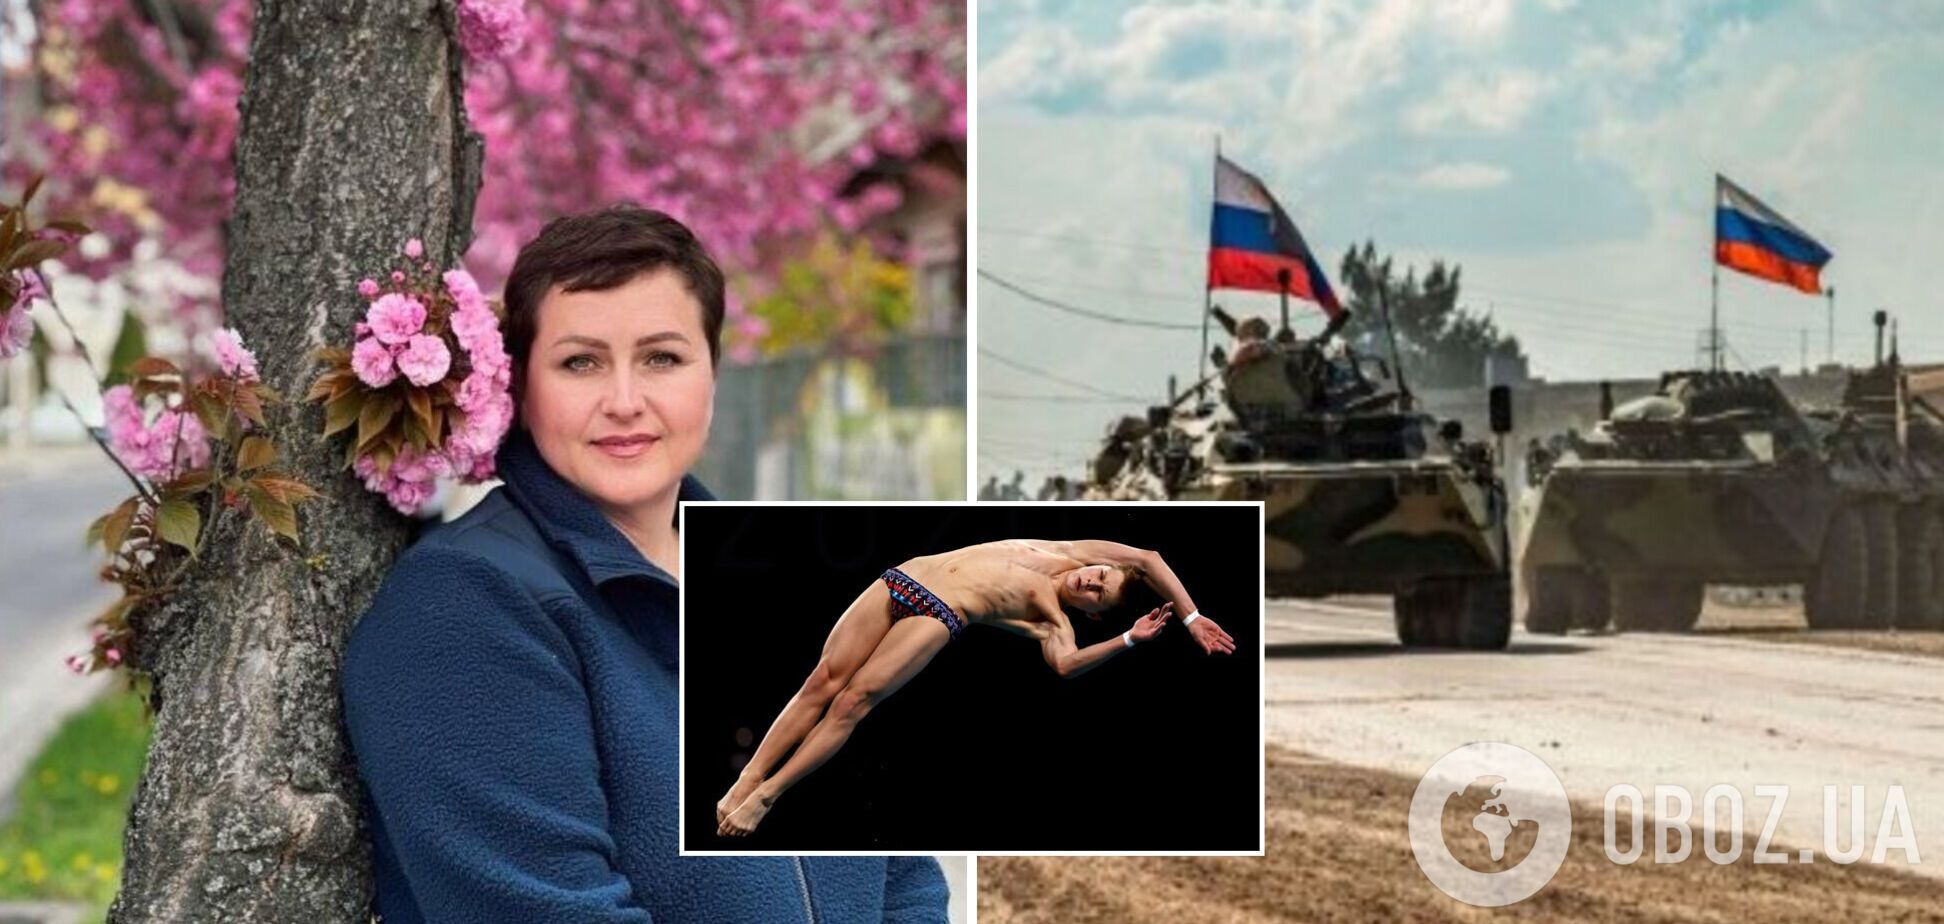 'Российские войска двинулись к вам, бегите': мама чемпиона Европы получила сообщение из Крыма и 4 суток выезжала из Украины